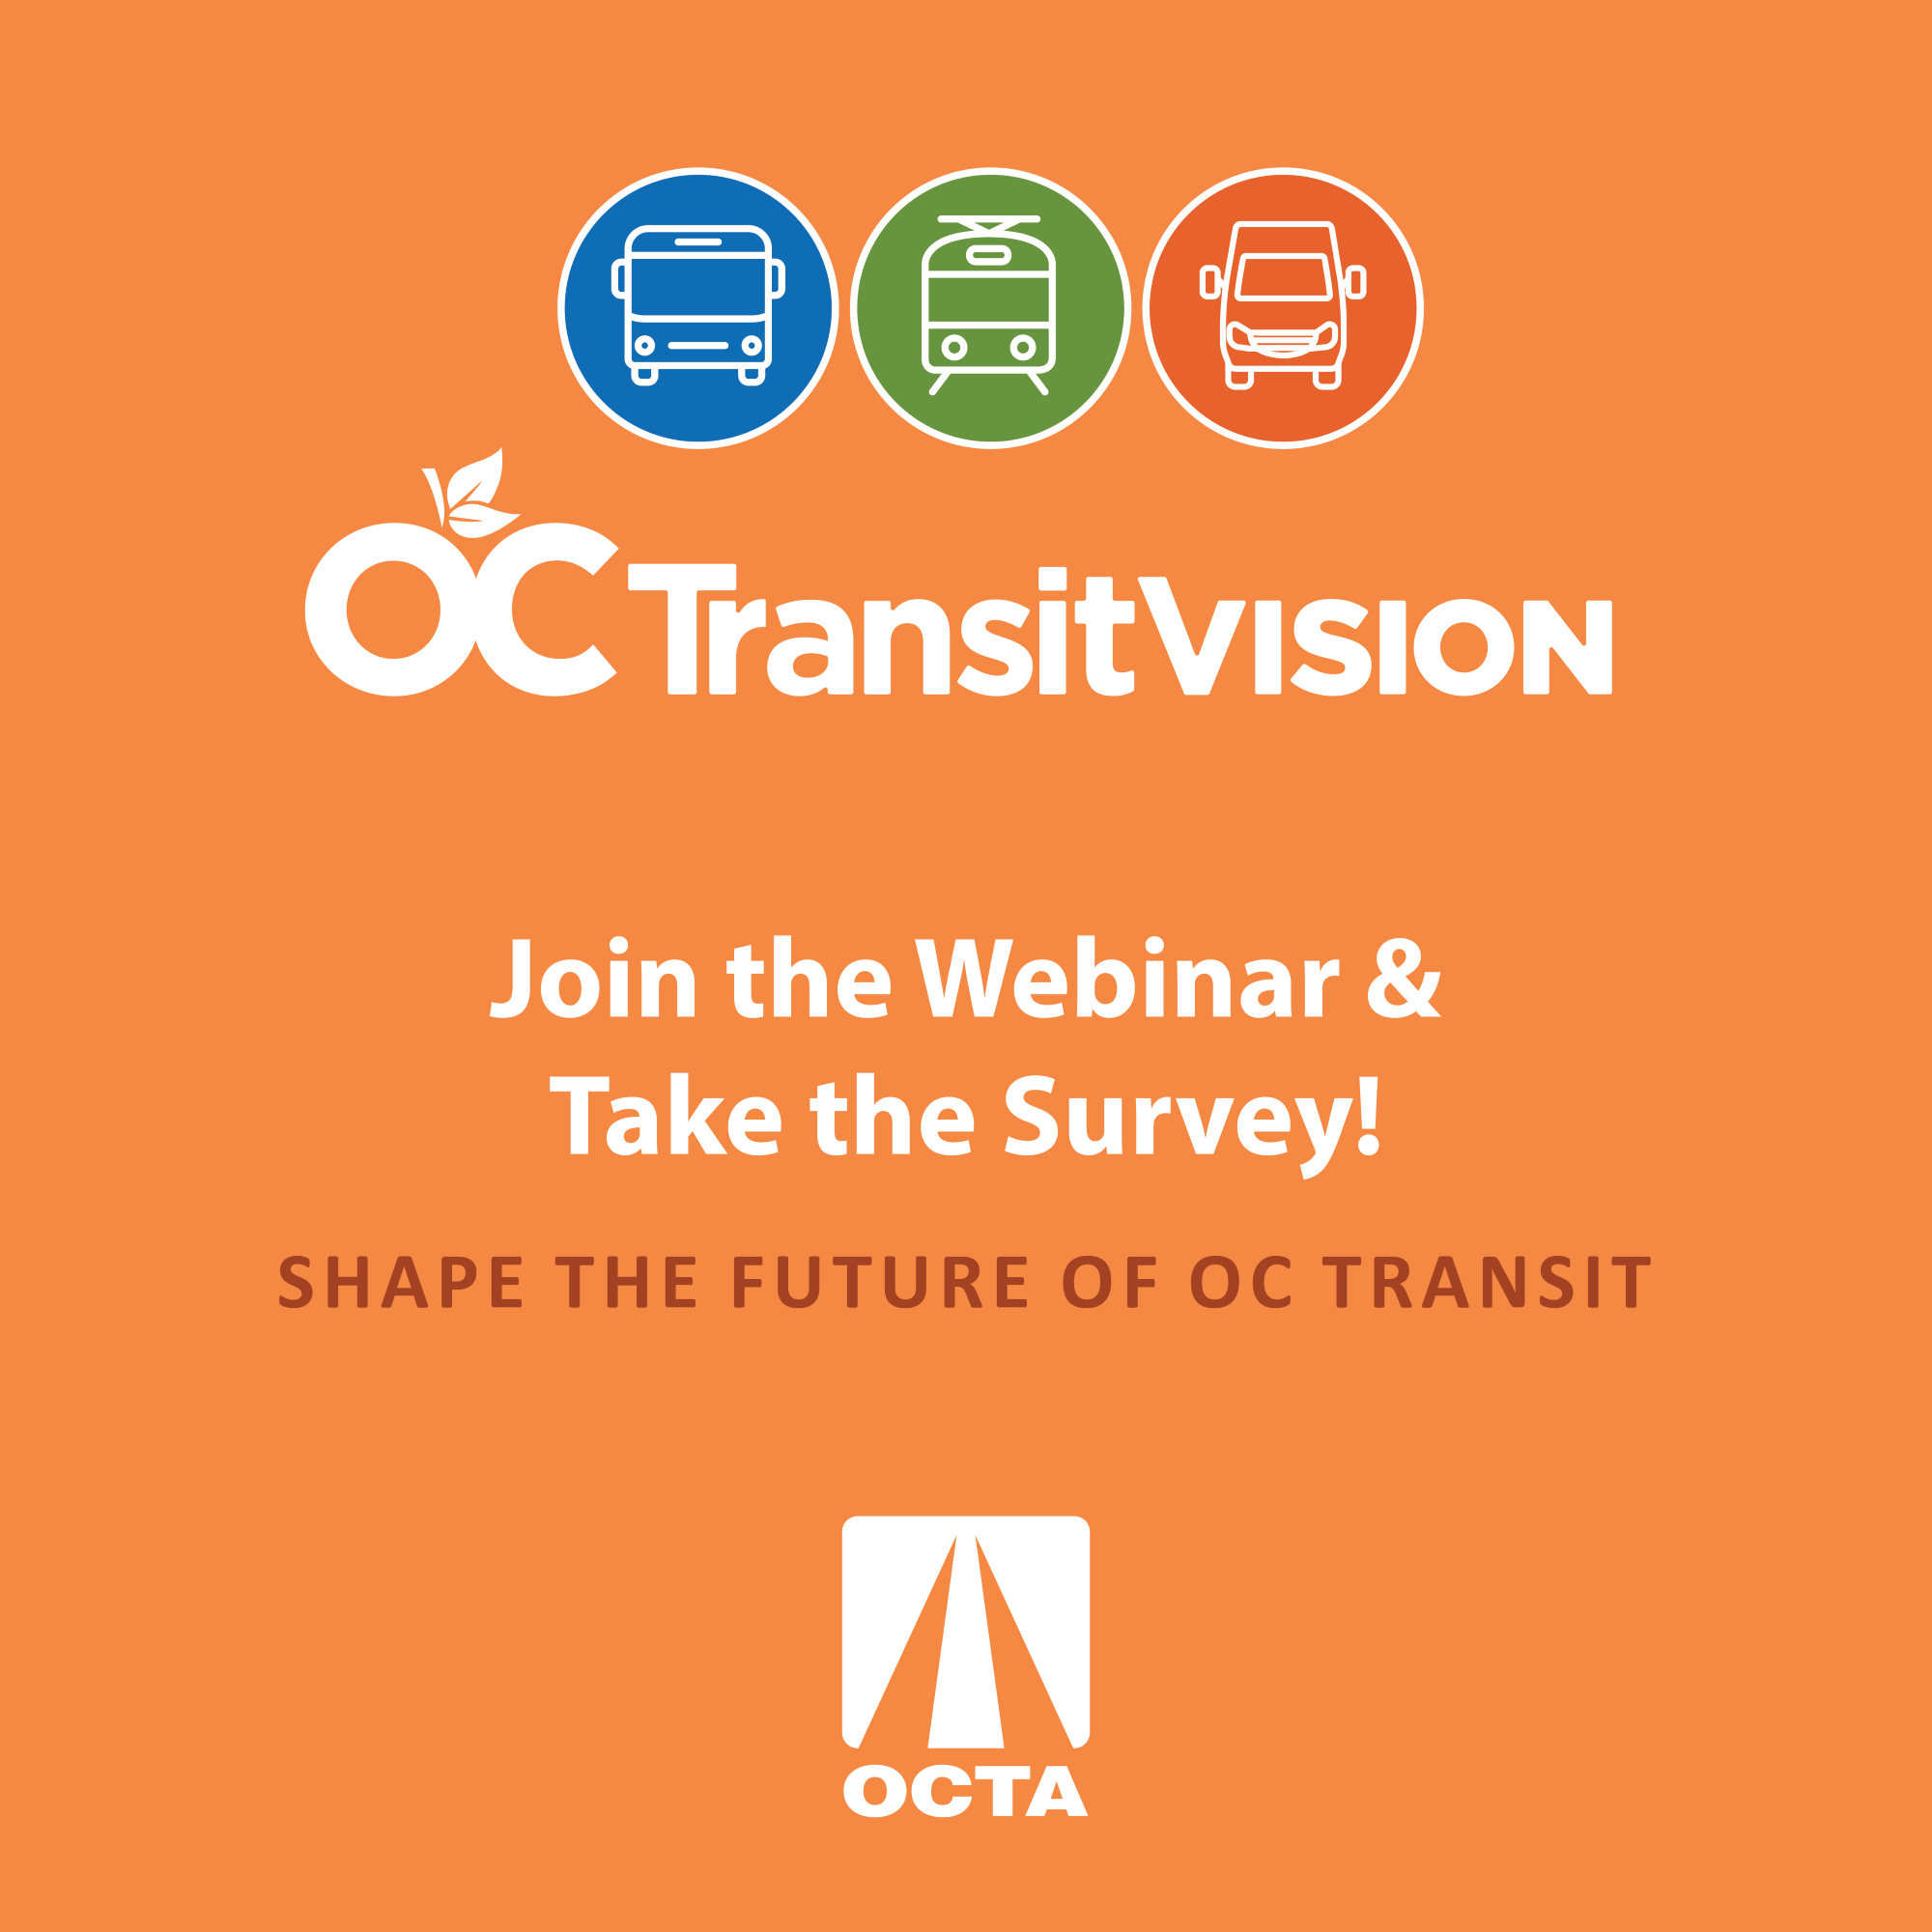 OC Transit Vision